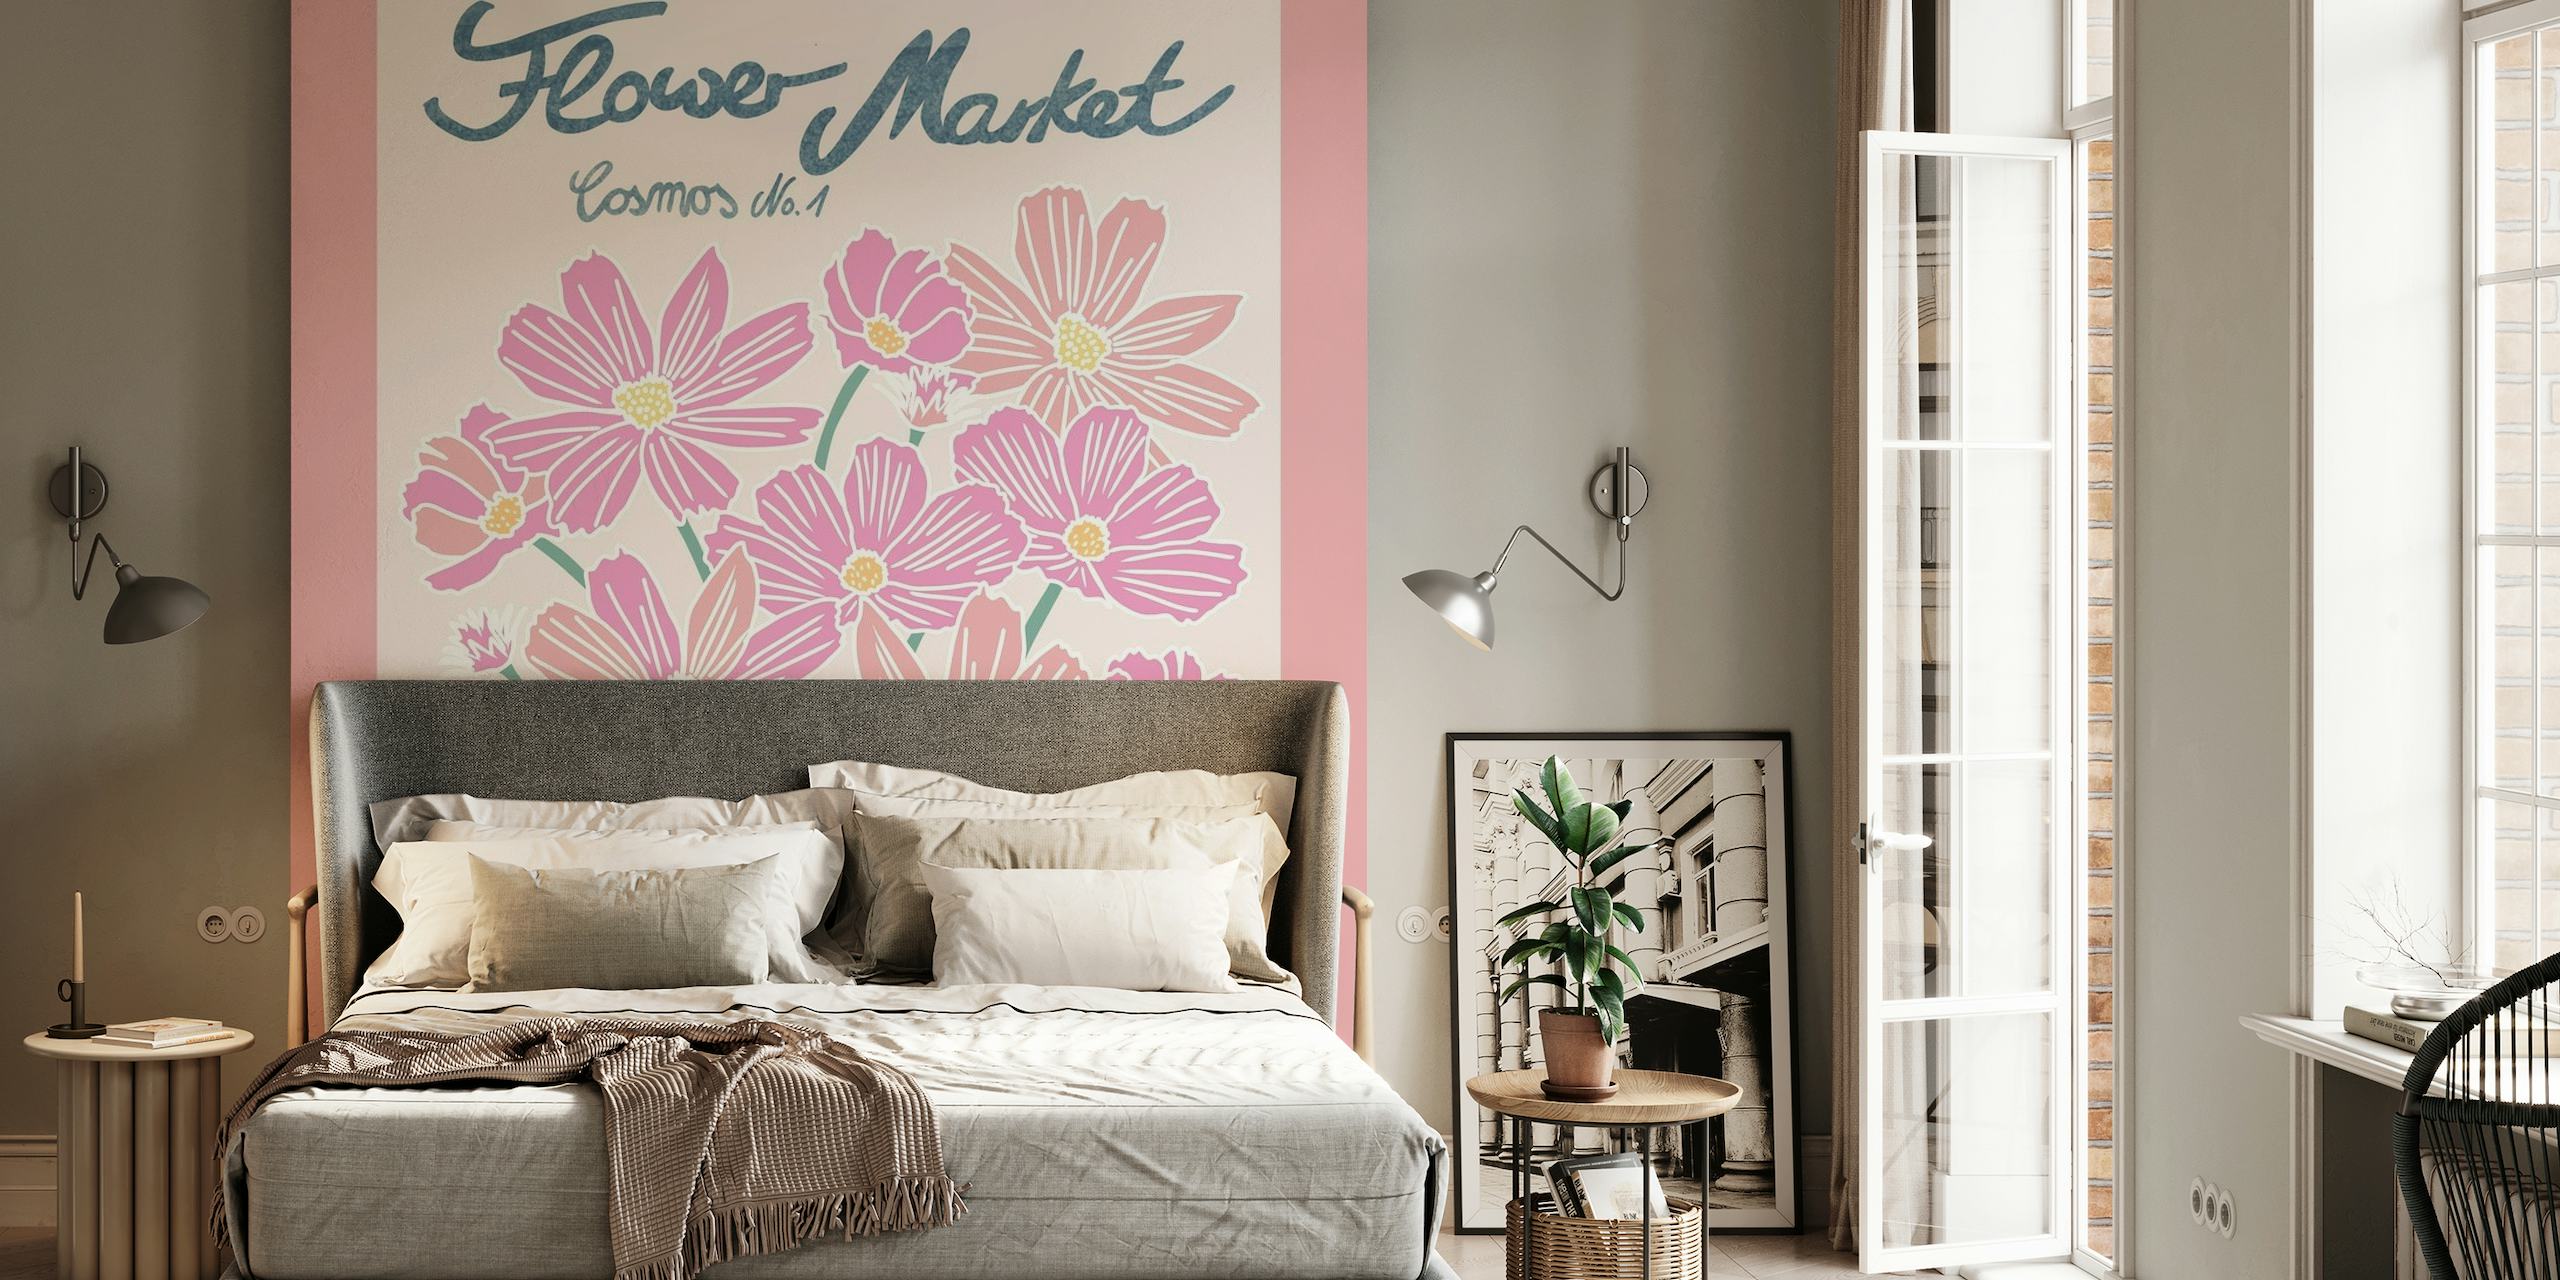 Illustratie van roze kosmosbloemen muurschildering op een pastelkleurige achtergrond met de titel Flower Market Cosmos 1